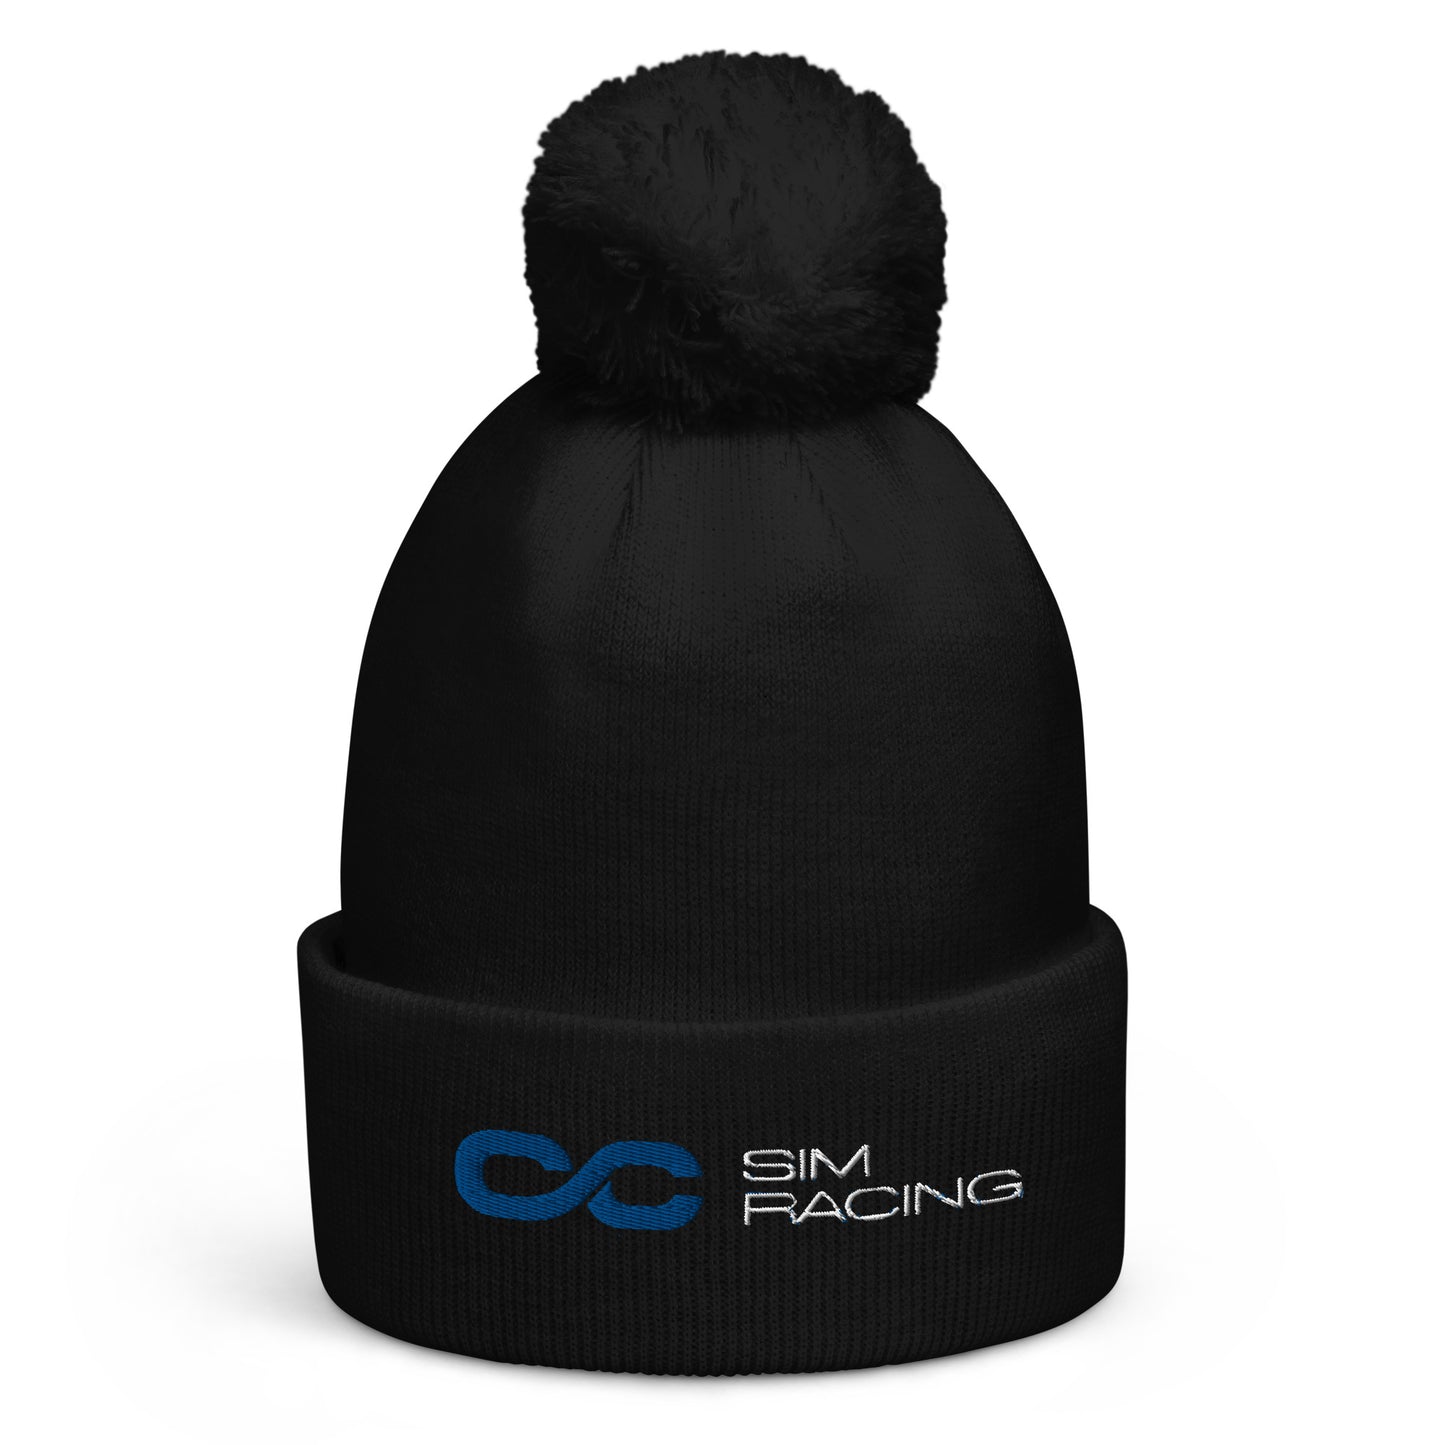 CC Sim Racing - Beanie Hat